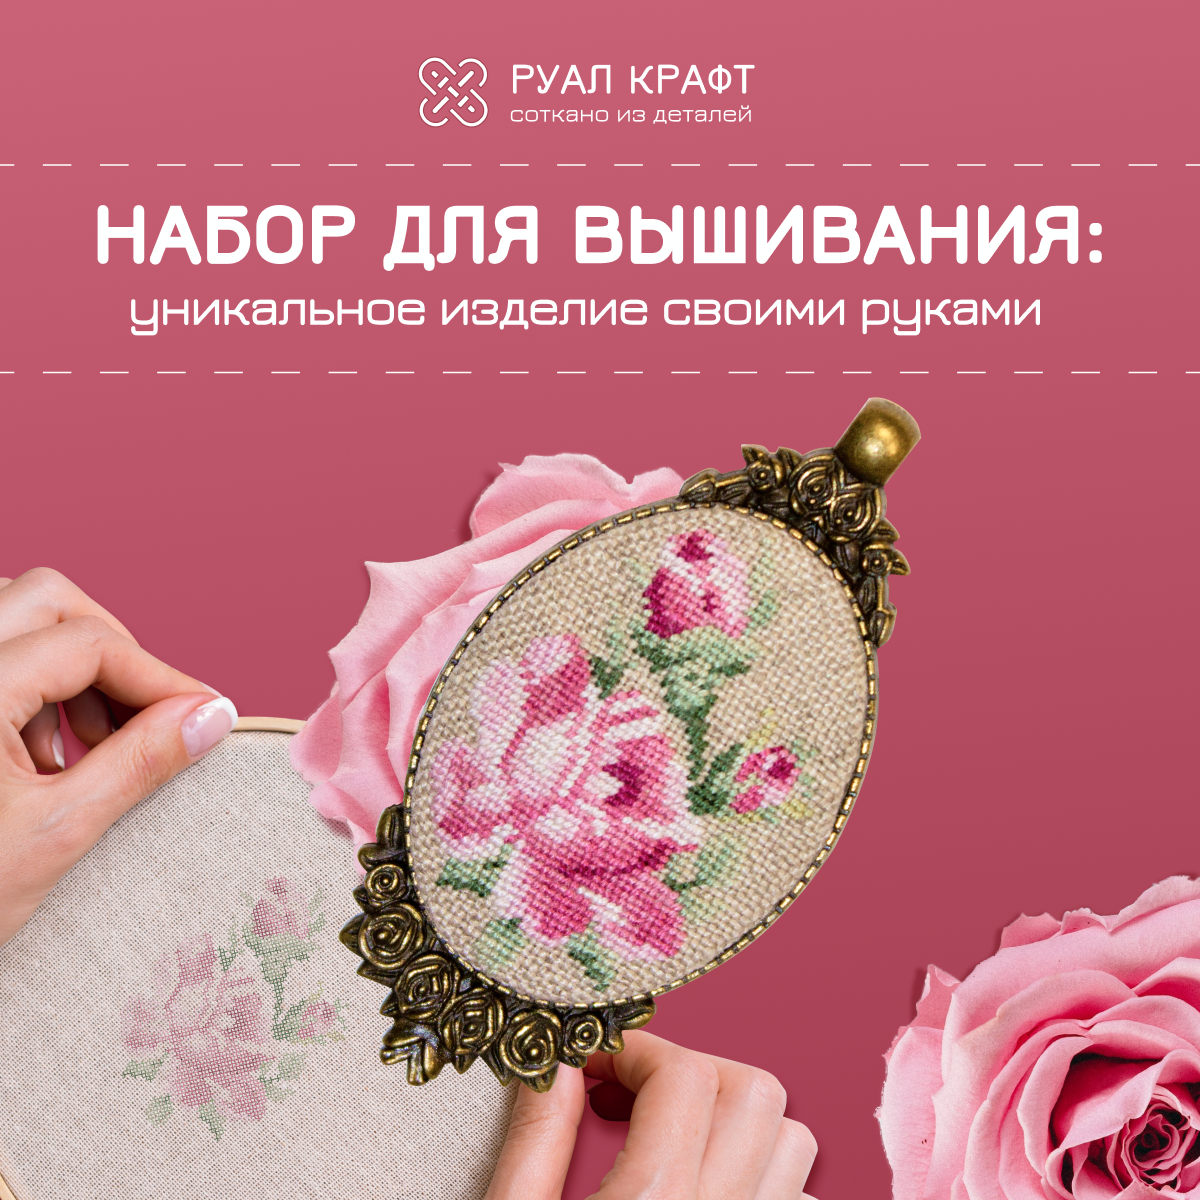 Набор для вышивания РуалКрафт РА-011, вышивка "Розы", набор для создания украшений кулон